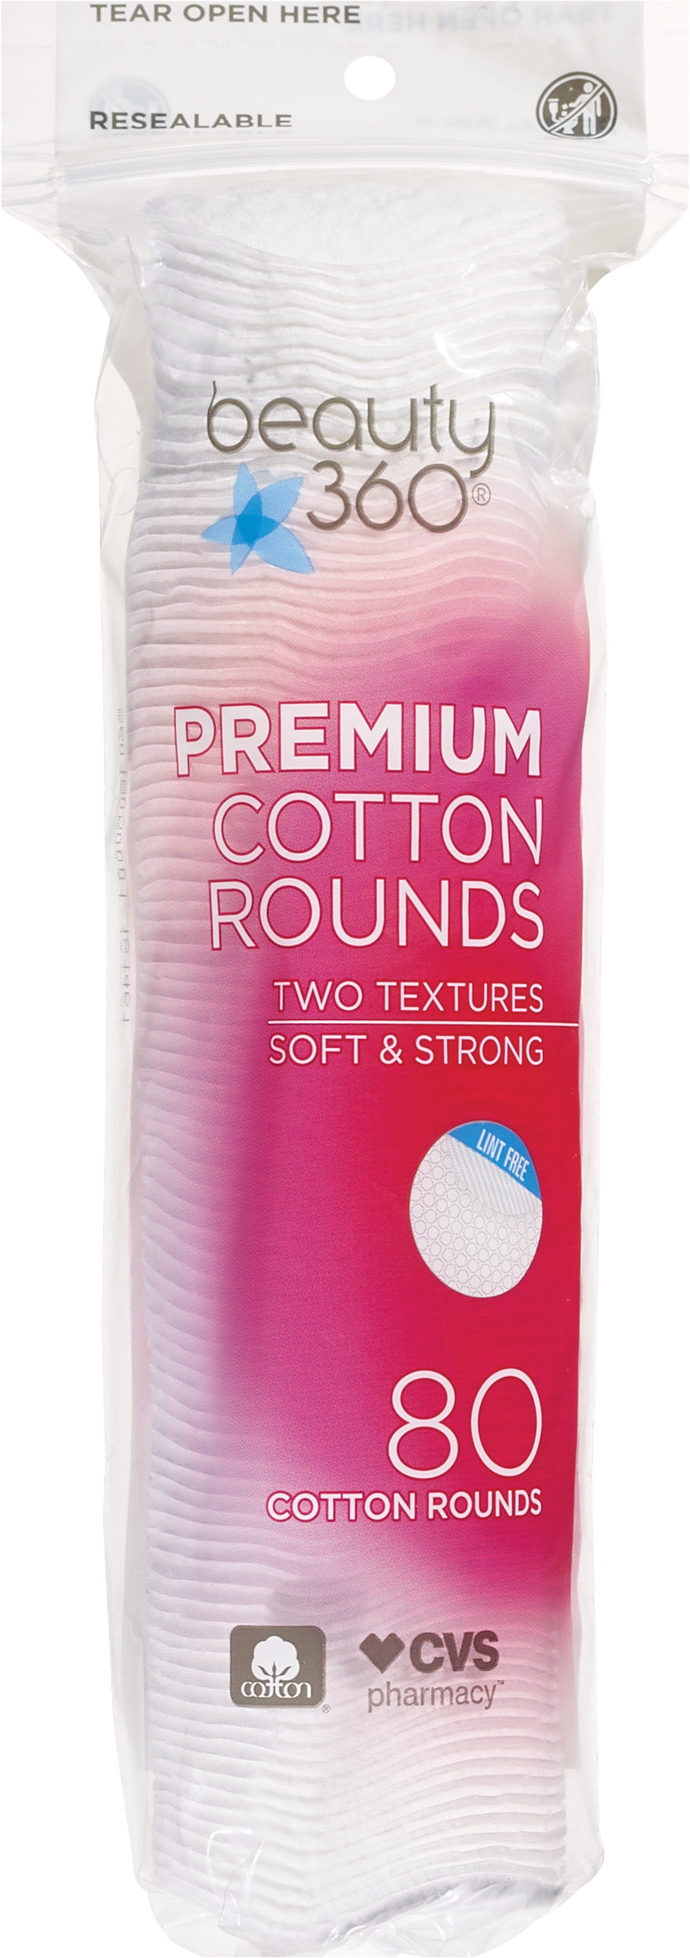 Beauty 360 Premium Cotton Rounds 80 ct.